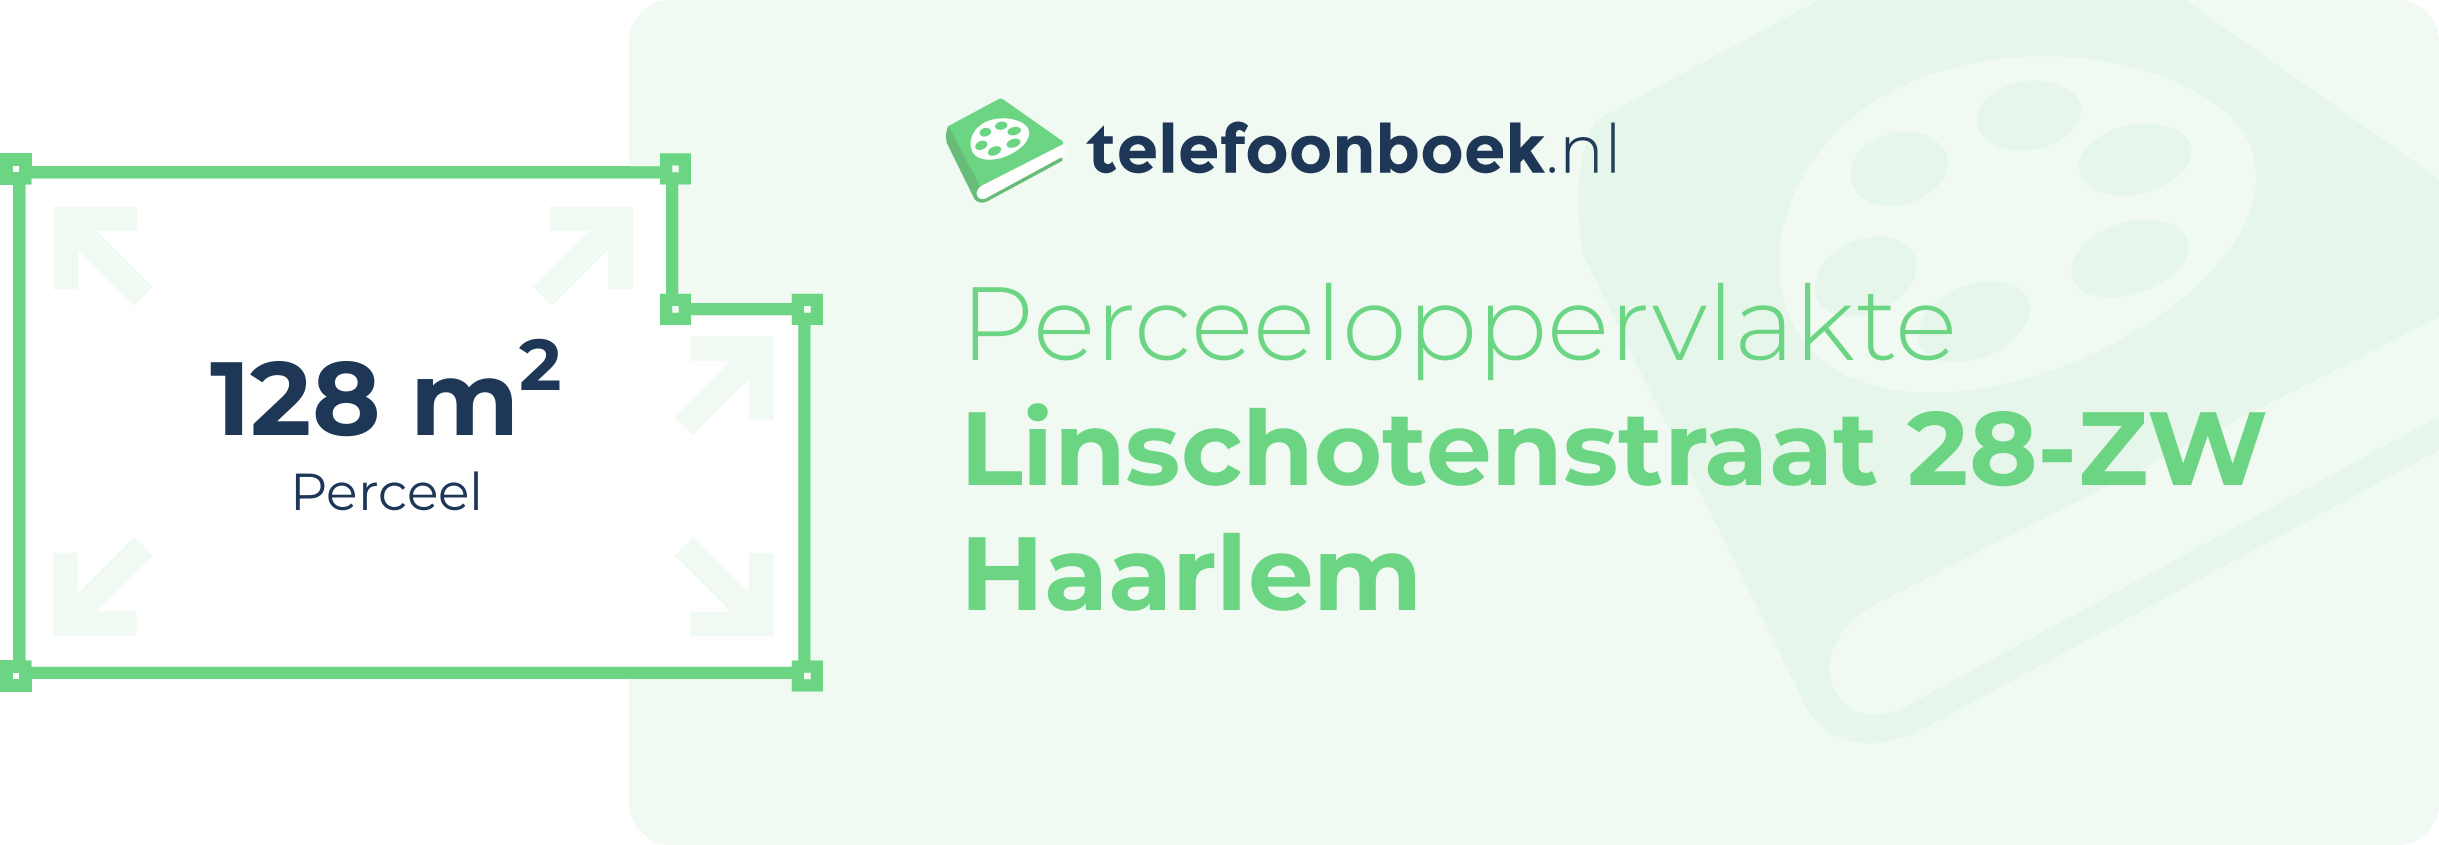 Perceeloppervlakte Linschotenstraat 28-ZW Haarlem